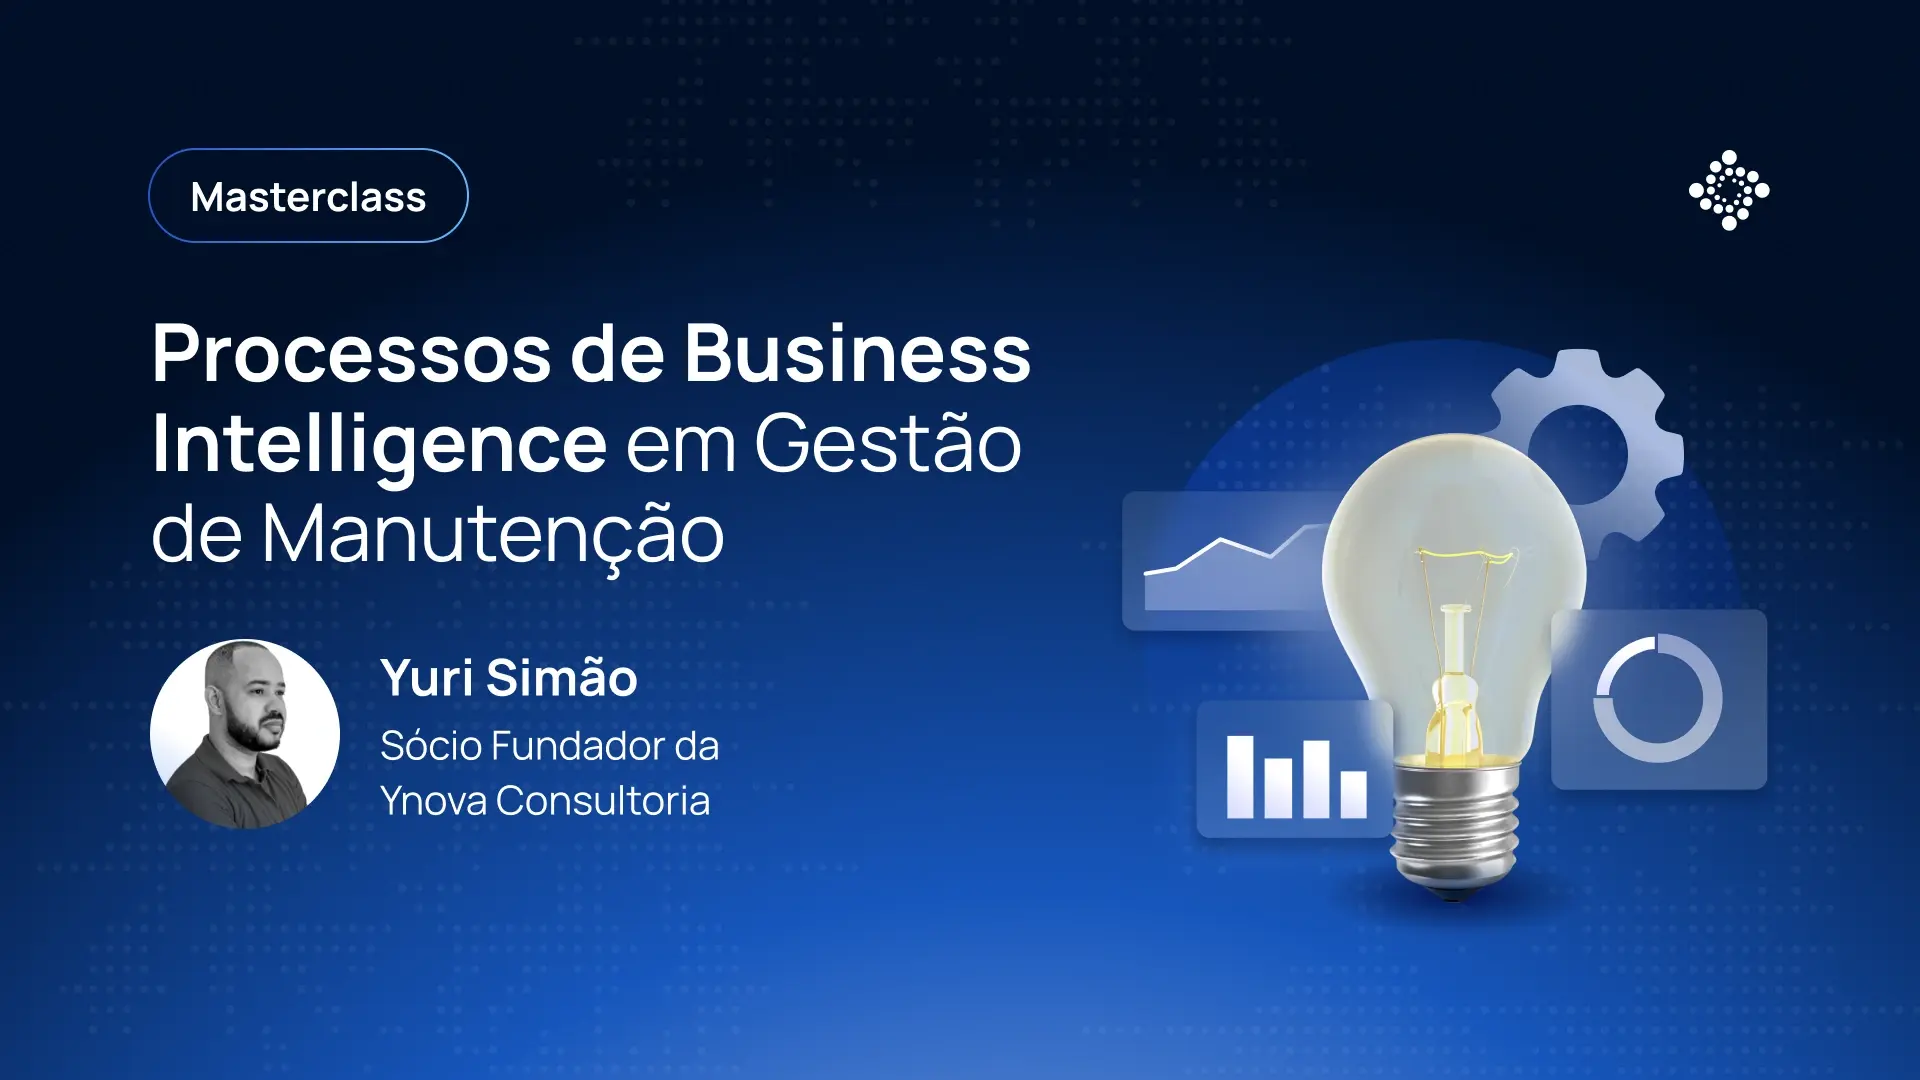 Masterclass: Processos de Business Intelligence em Gestão de Manutenção - Yuri Simão